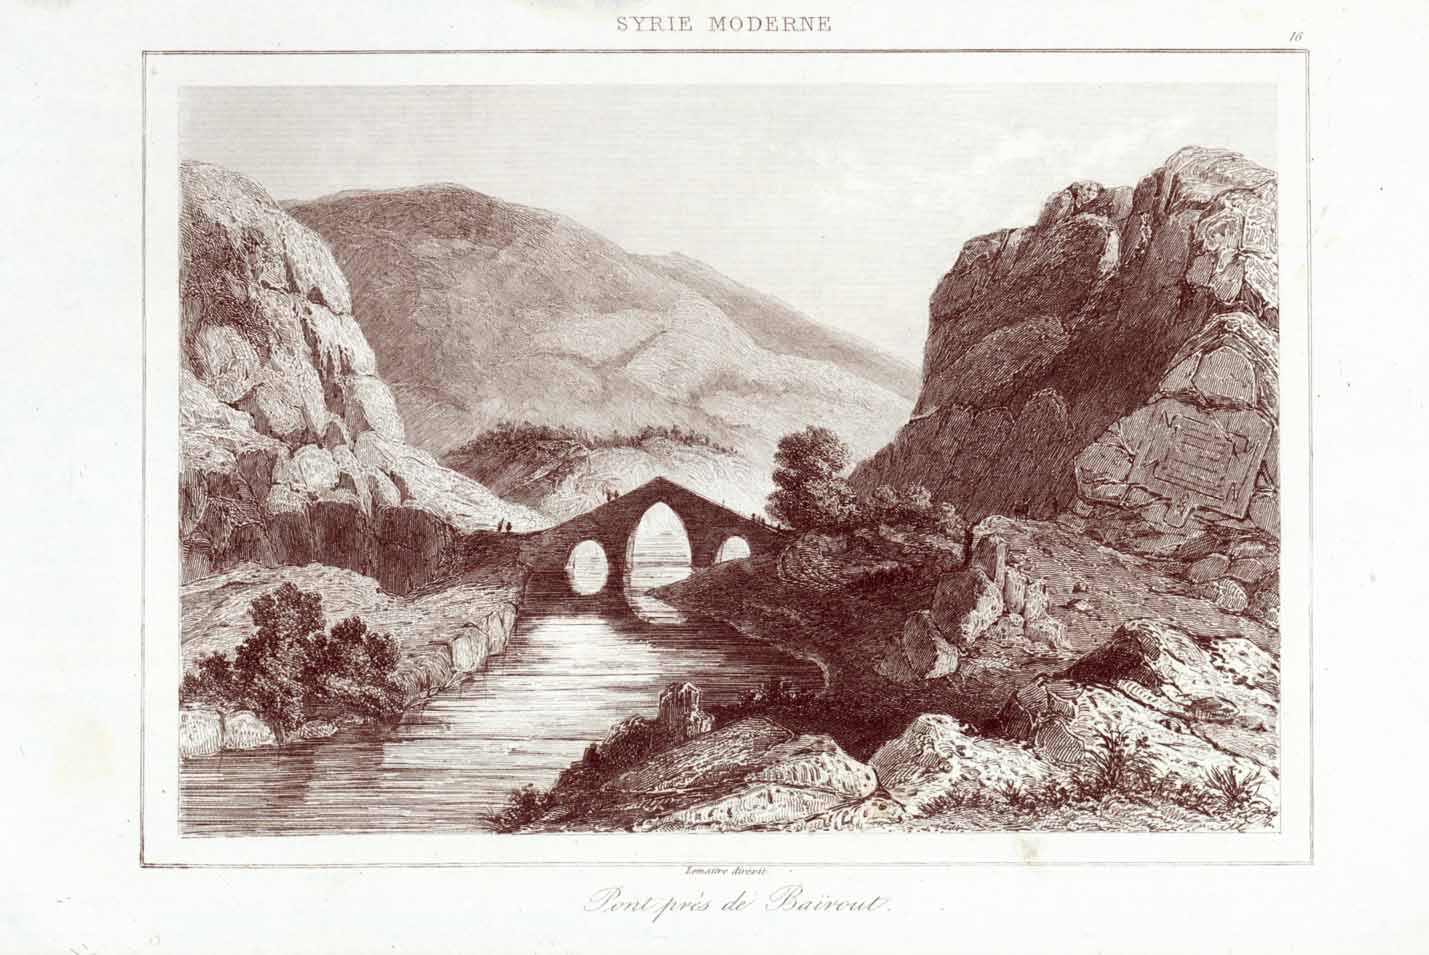 Neareast, "Pont pres de Bairout"  Steel engraving by Lemaitre 1848.